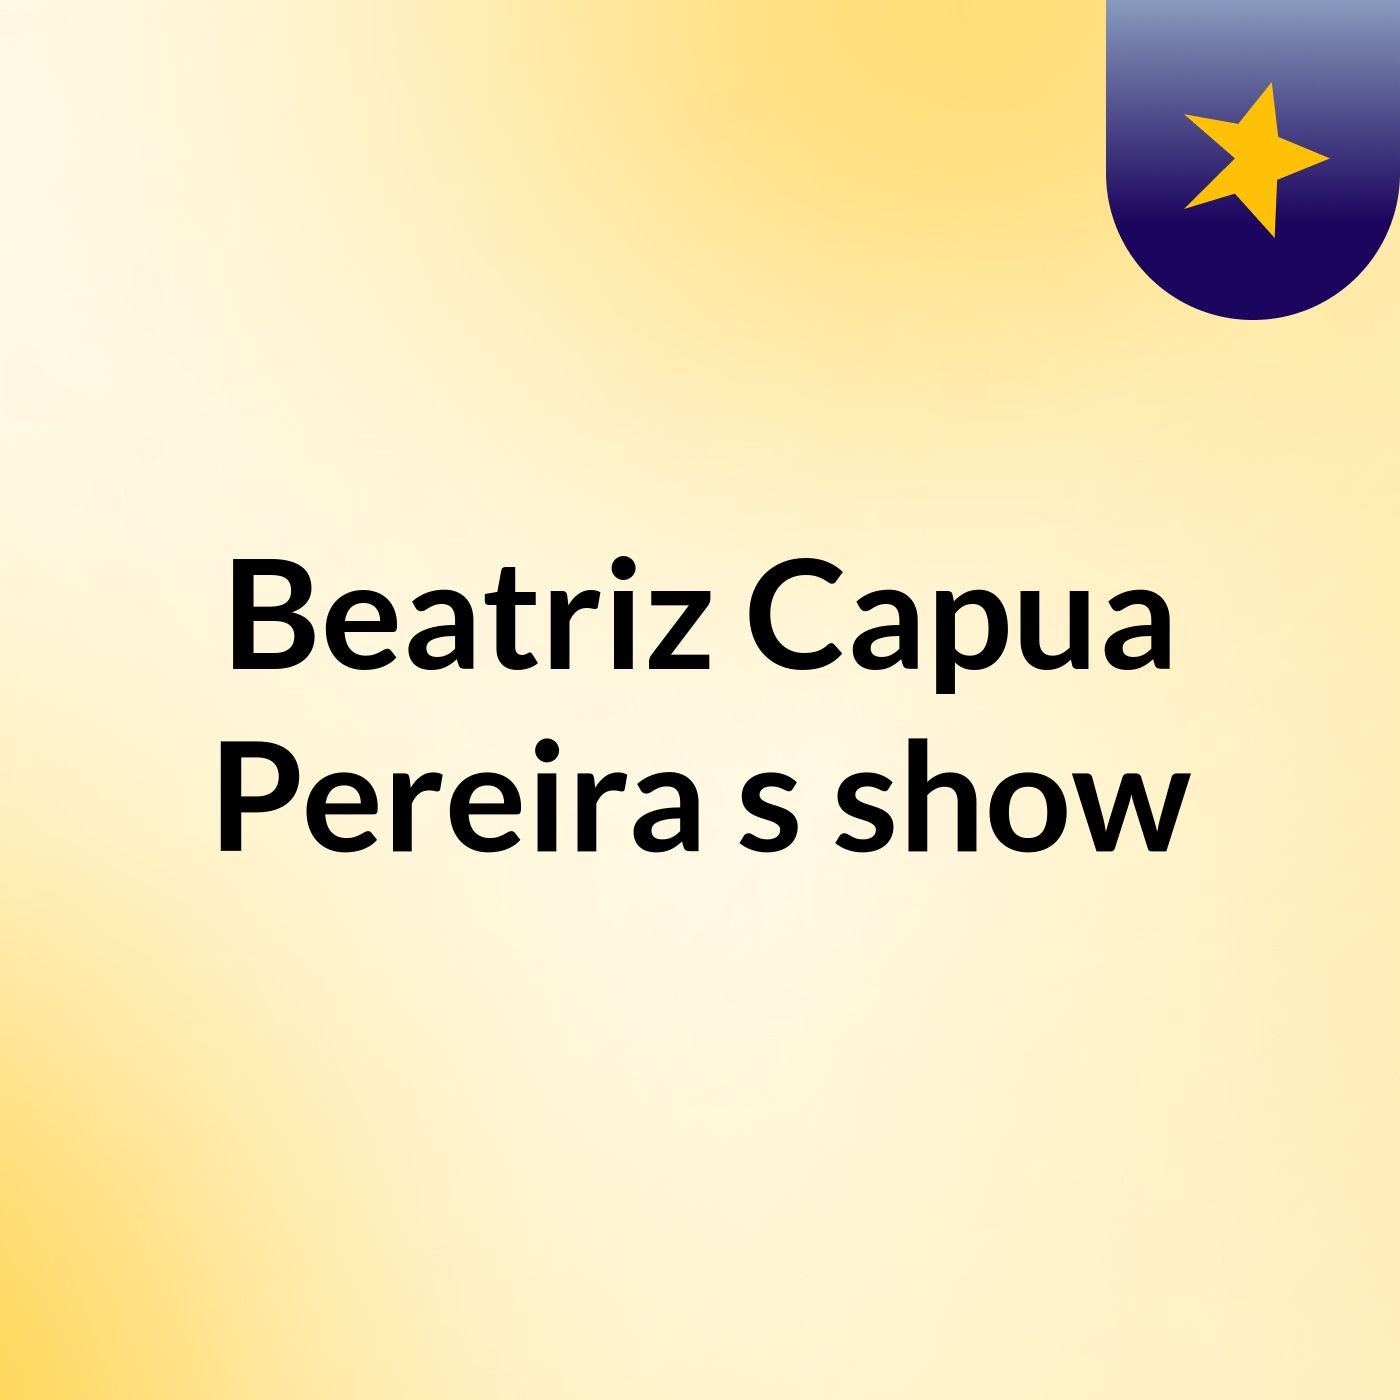 Beatriz Capua Pereira's show